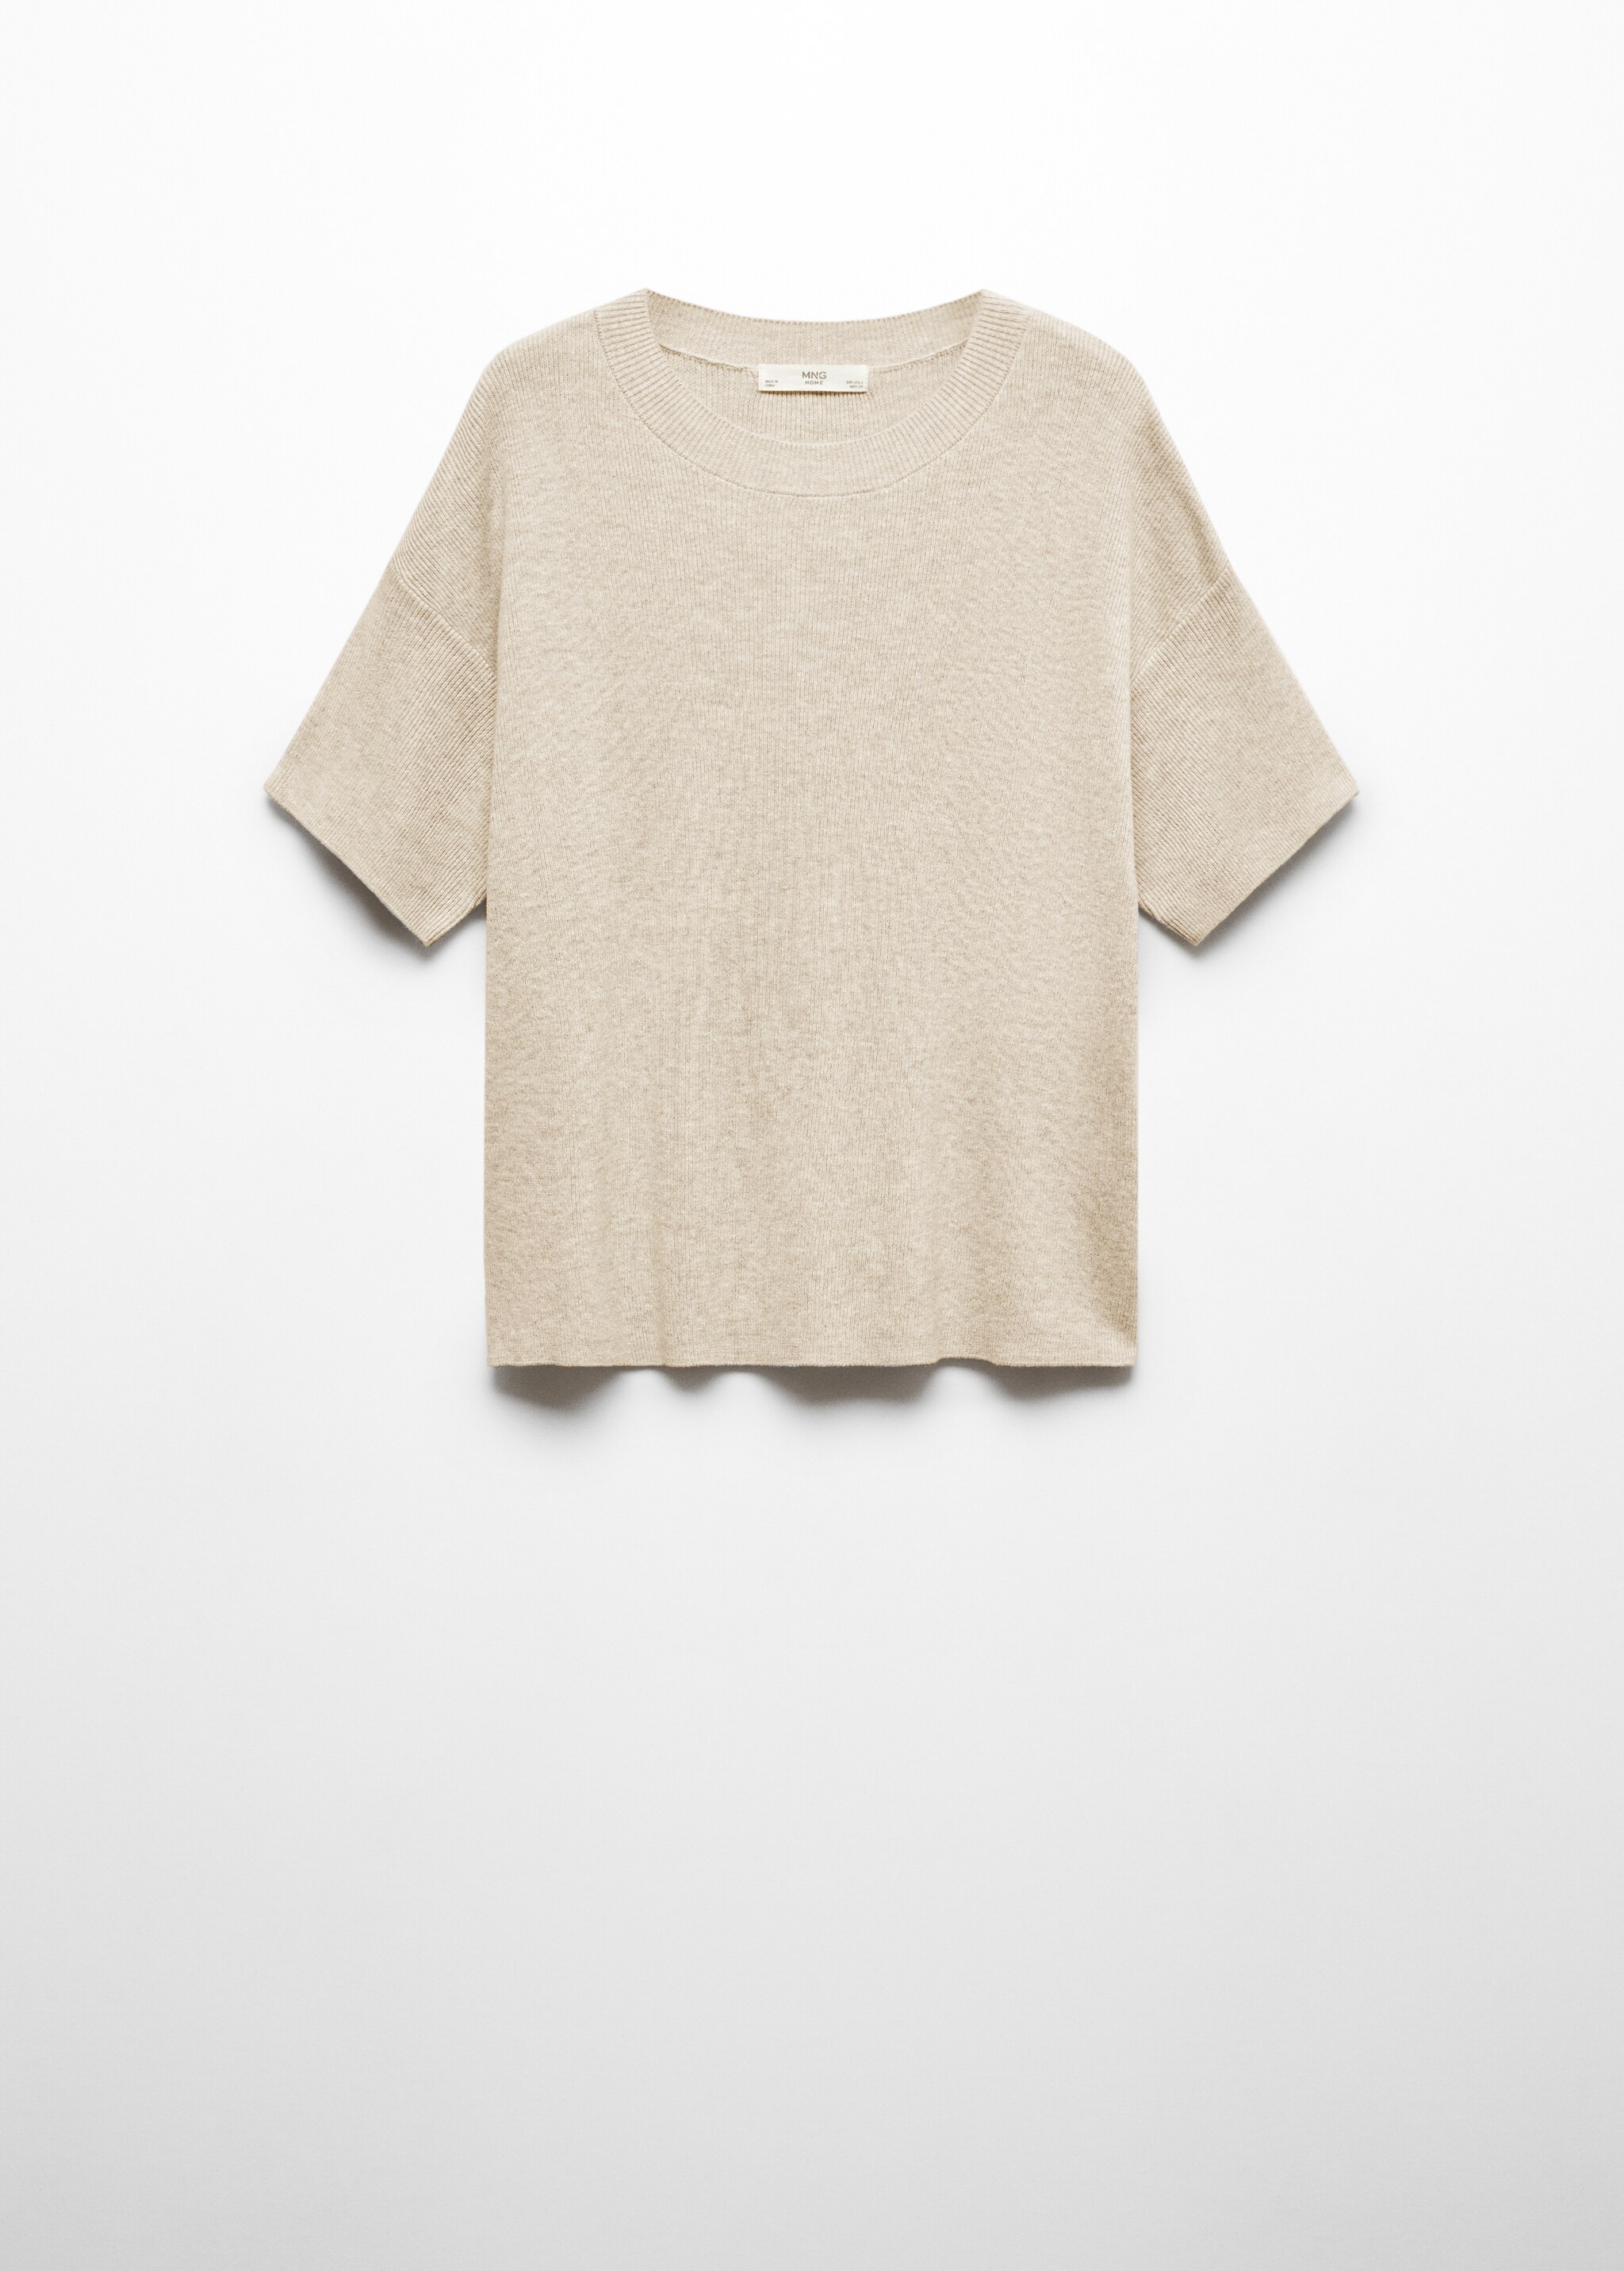 T-shirt maille coton lin - Article sans modèle